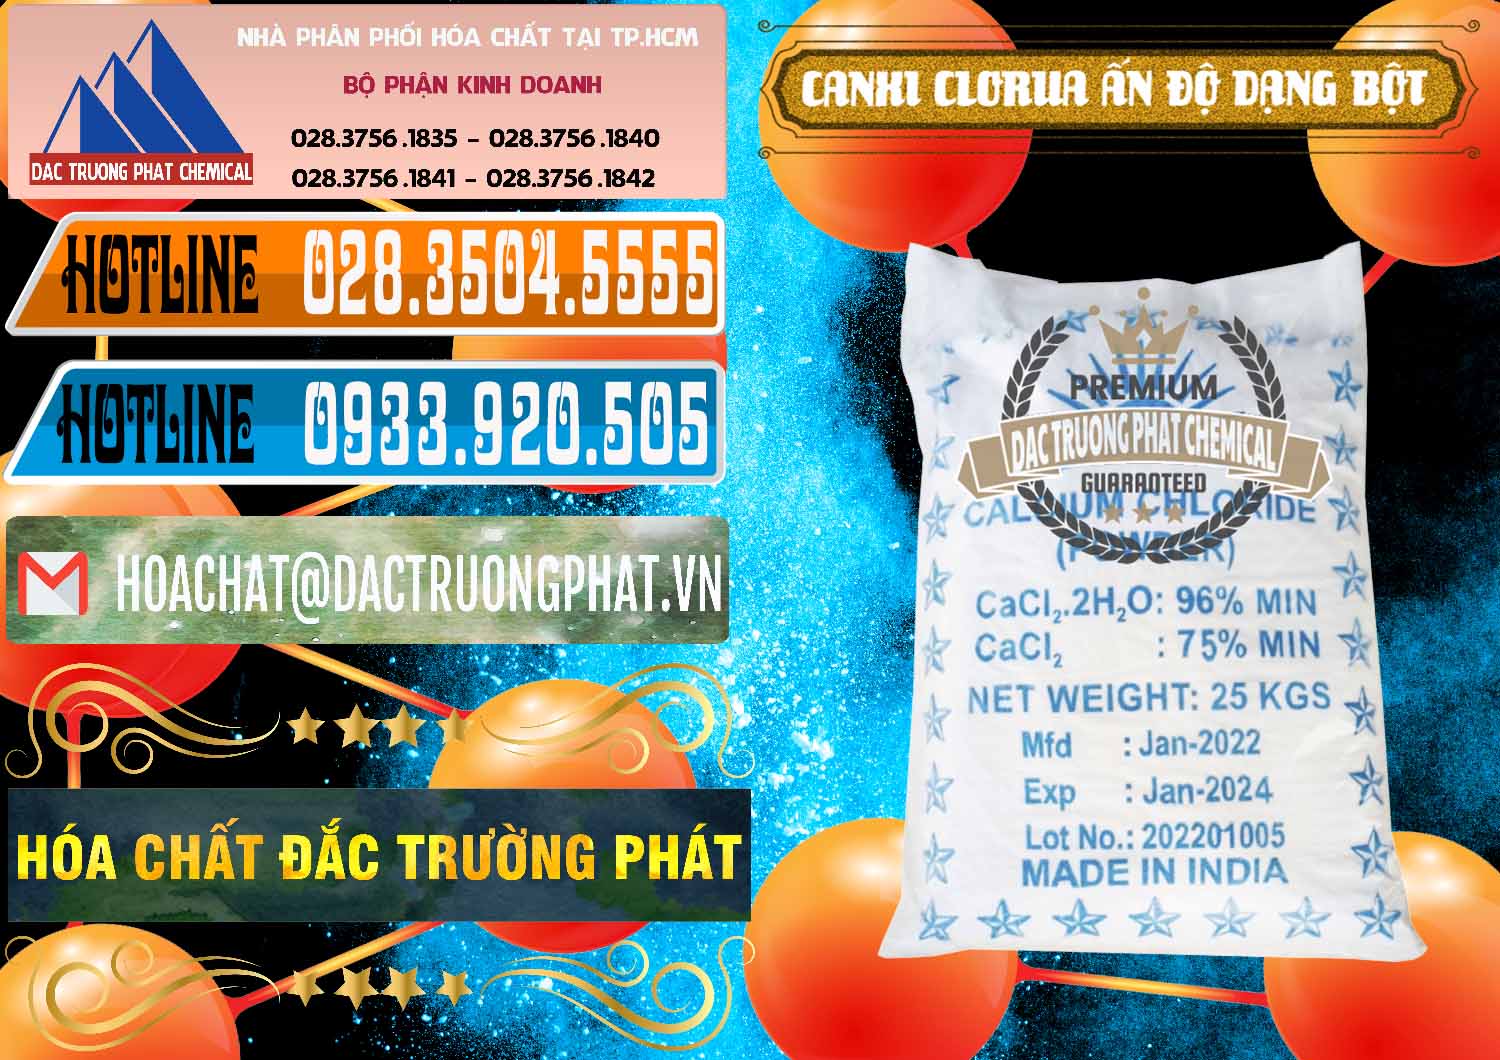 Cty chuyên bán và phân phối CaCl2 – Canxi Clorua 96% Dạng Bột Ấn Độ India - 0420 - Nhà cung cấp - kinh doanh hóa chất tại TP.HCM - stmp.net